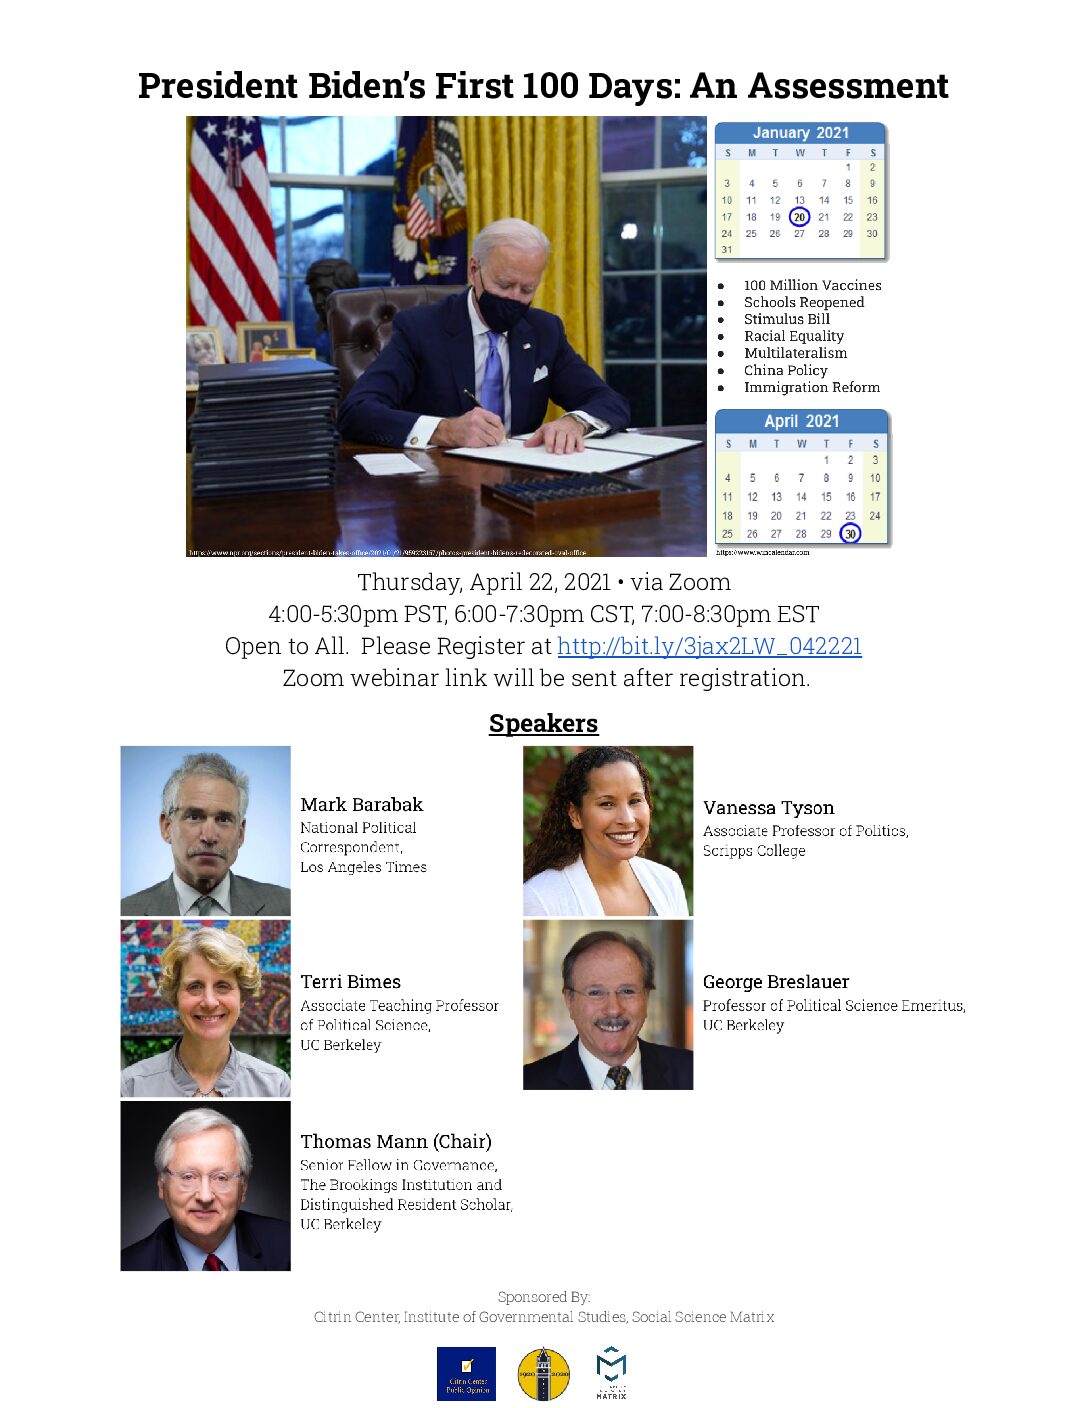 Event flyer for "President Biden’s First 100 Days: An Assessment"